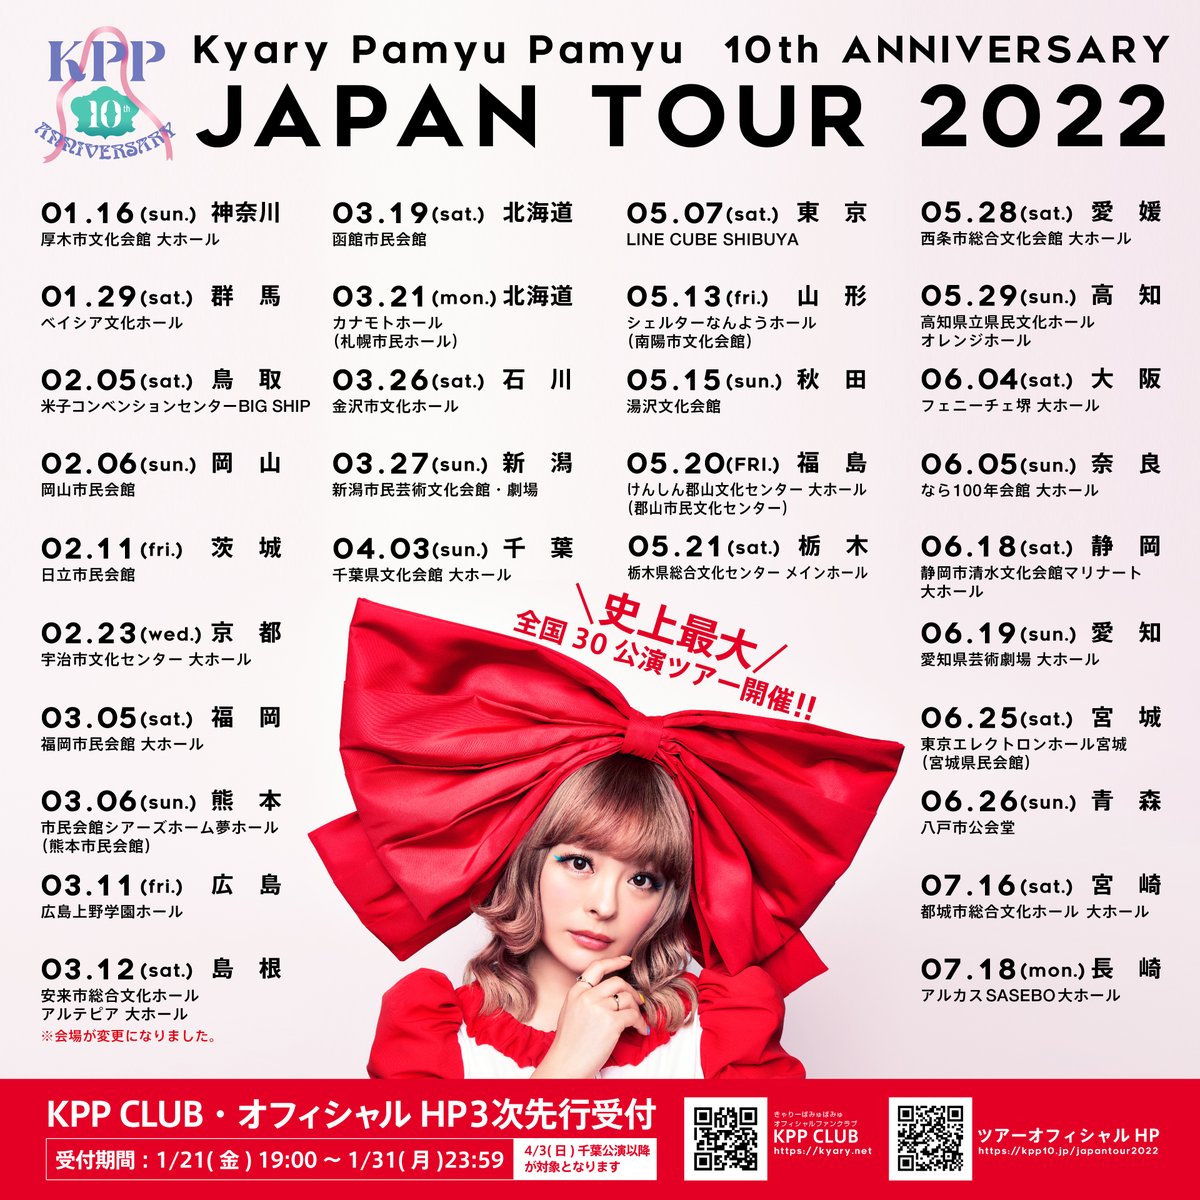 きゃりーぱみゅぱみゅ 10th ANNIVERSARY JAPAN TOUR 2022 CANDY WAVE（アルカスSASEBO）